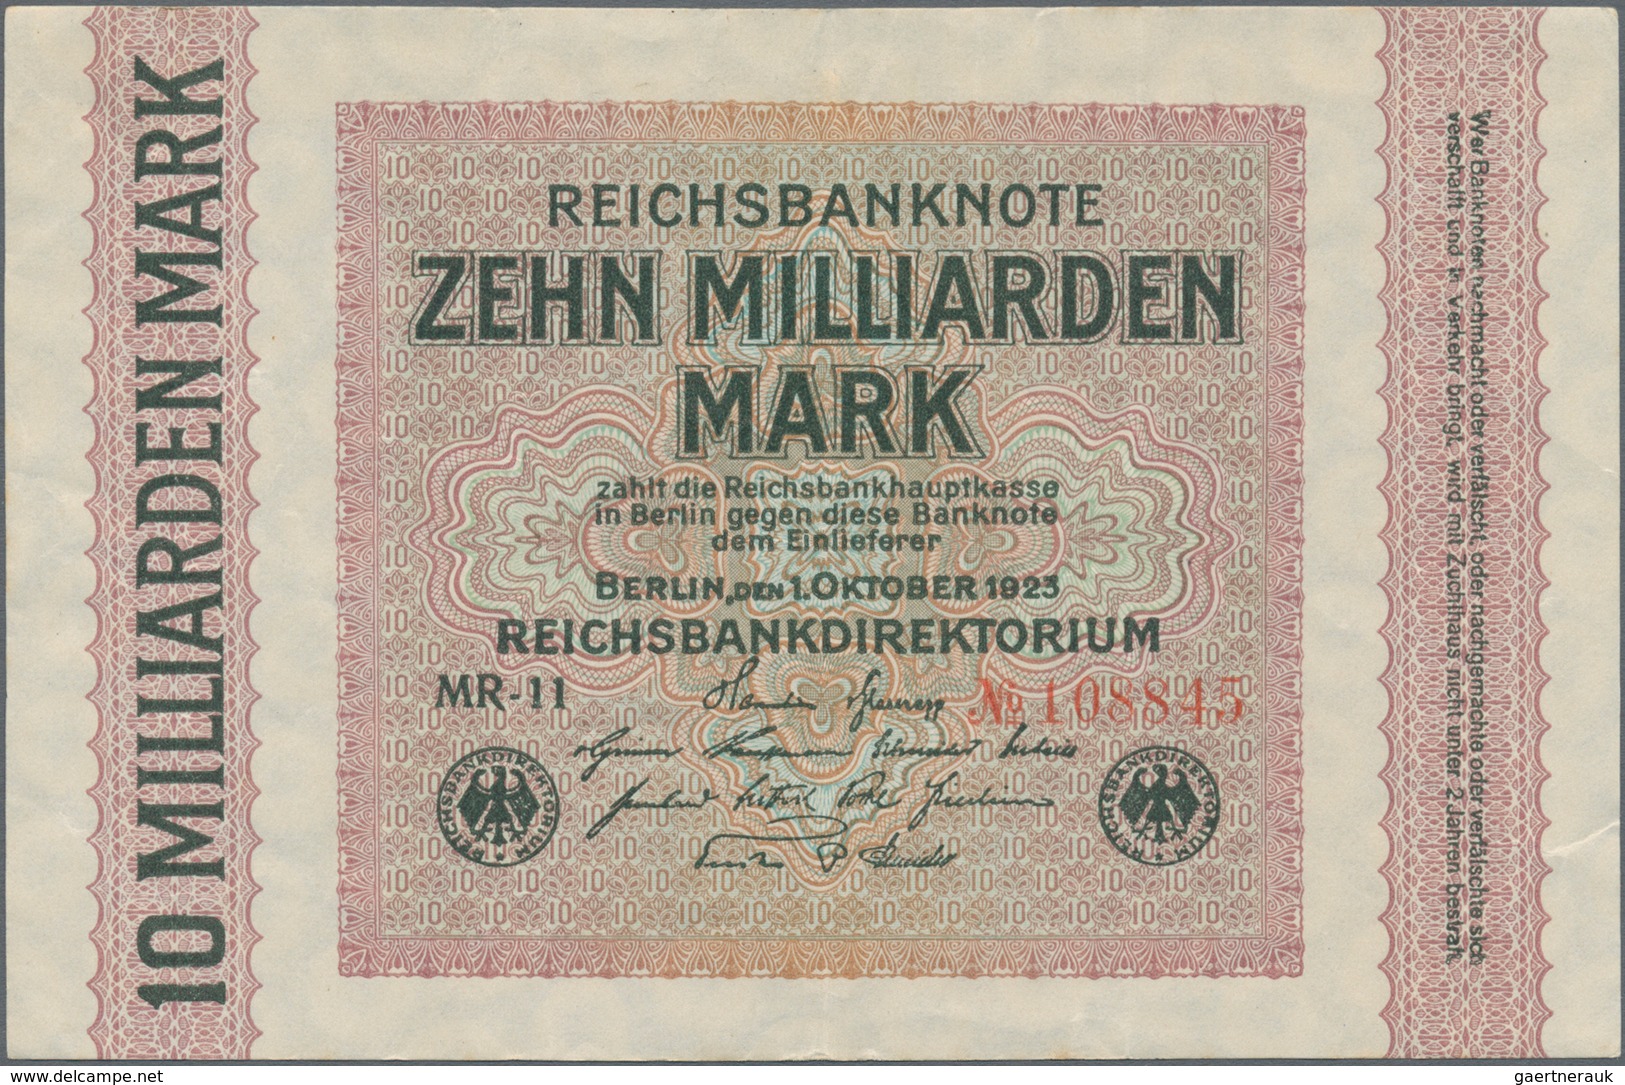 Deutschland - Sonstige: Leitz-Ordner mit mehr als 300 Banknoten vom Kaiserreich über die Inflation,